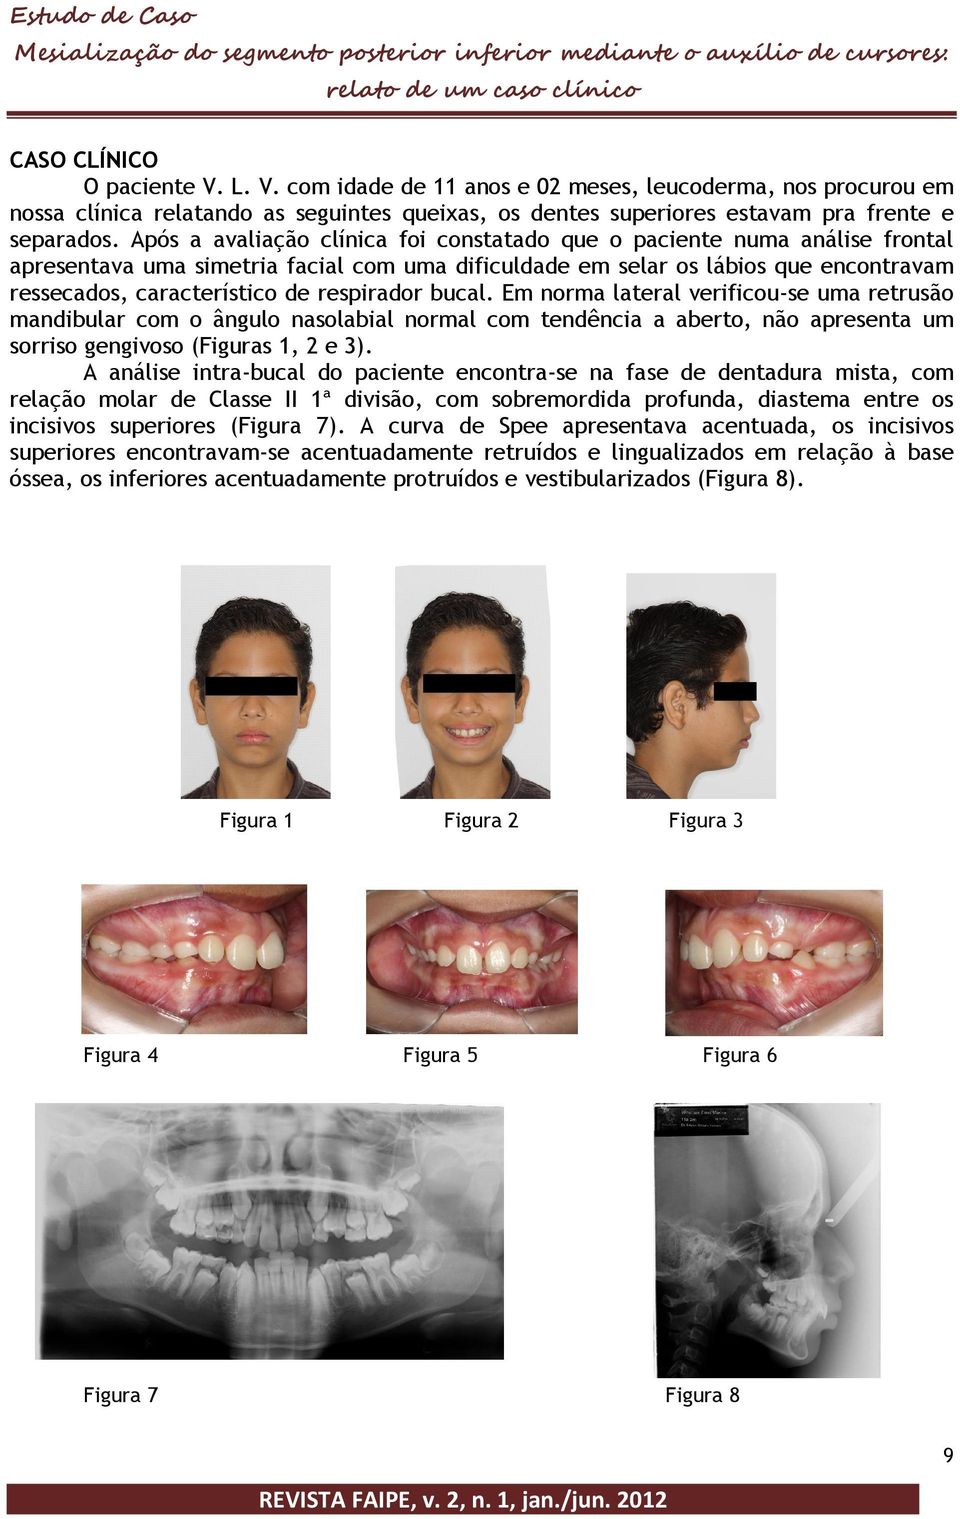 respirador bucal. Em norma lateral verificou-se uma retrusão mandibular com o ângulo nasolabial normal com tendência a aberto, não apresenta um sorriso gengivoso (Figuras 1, 2 e 3).